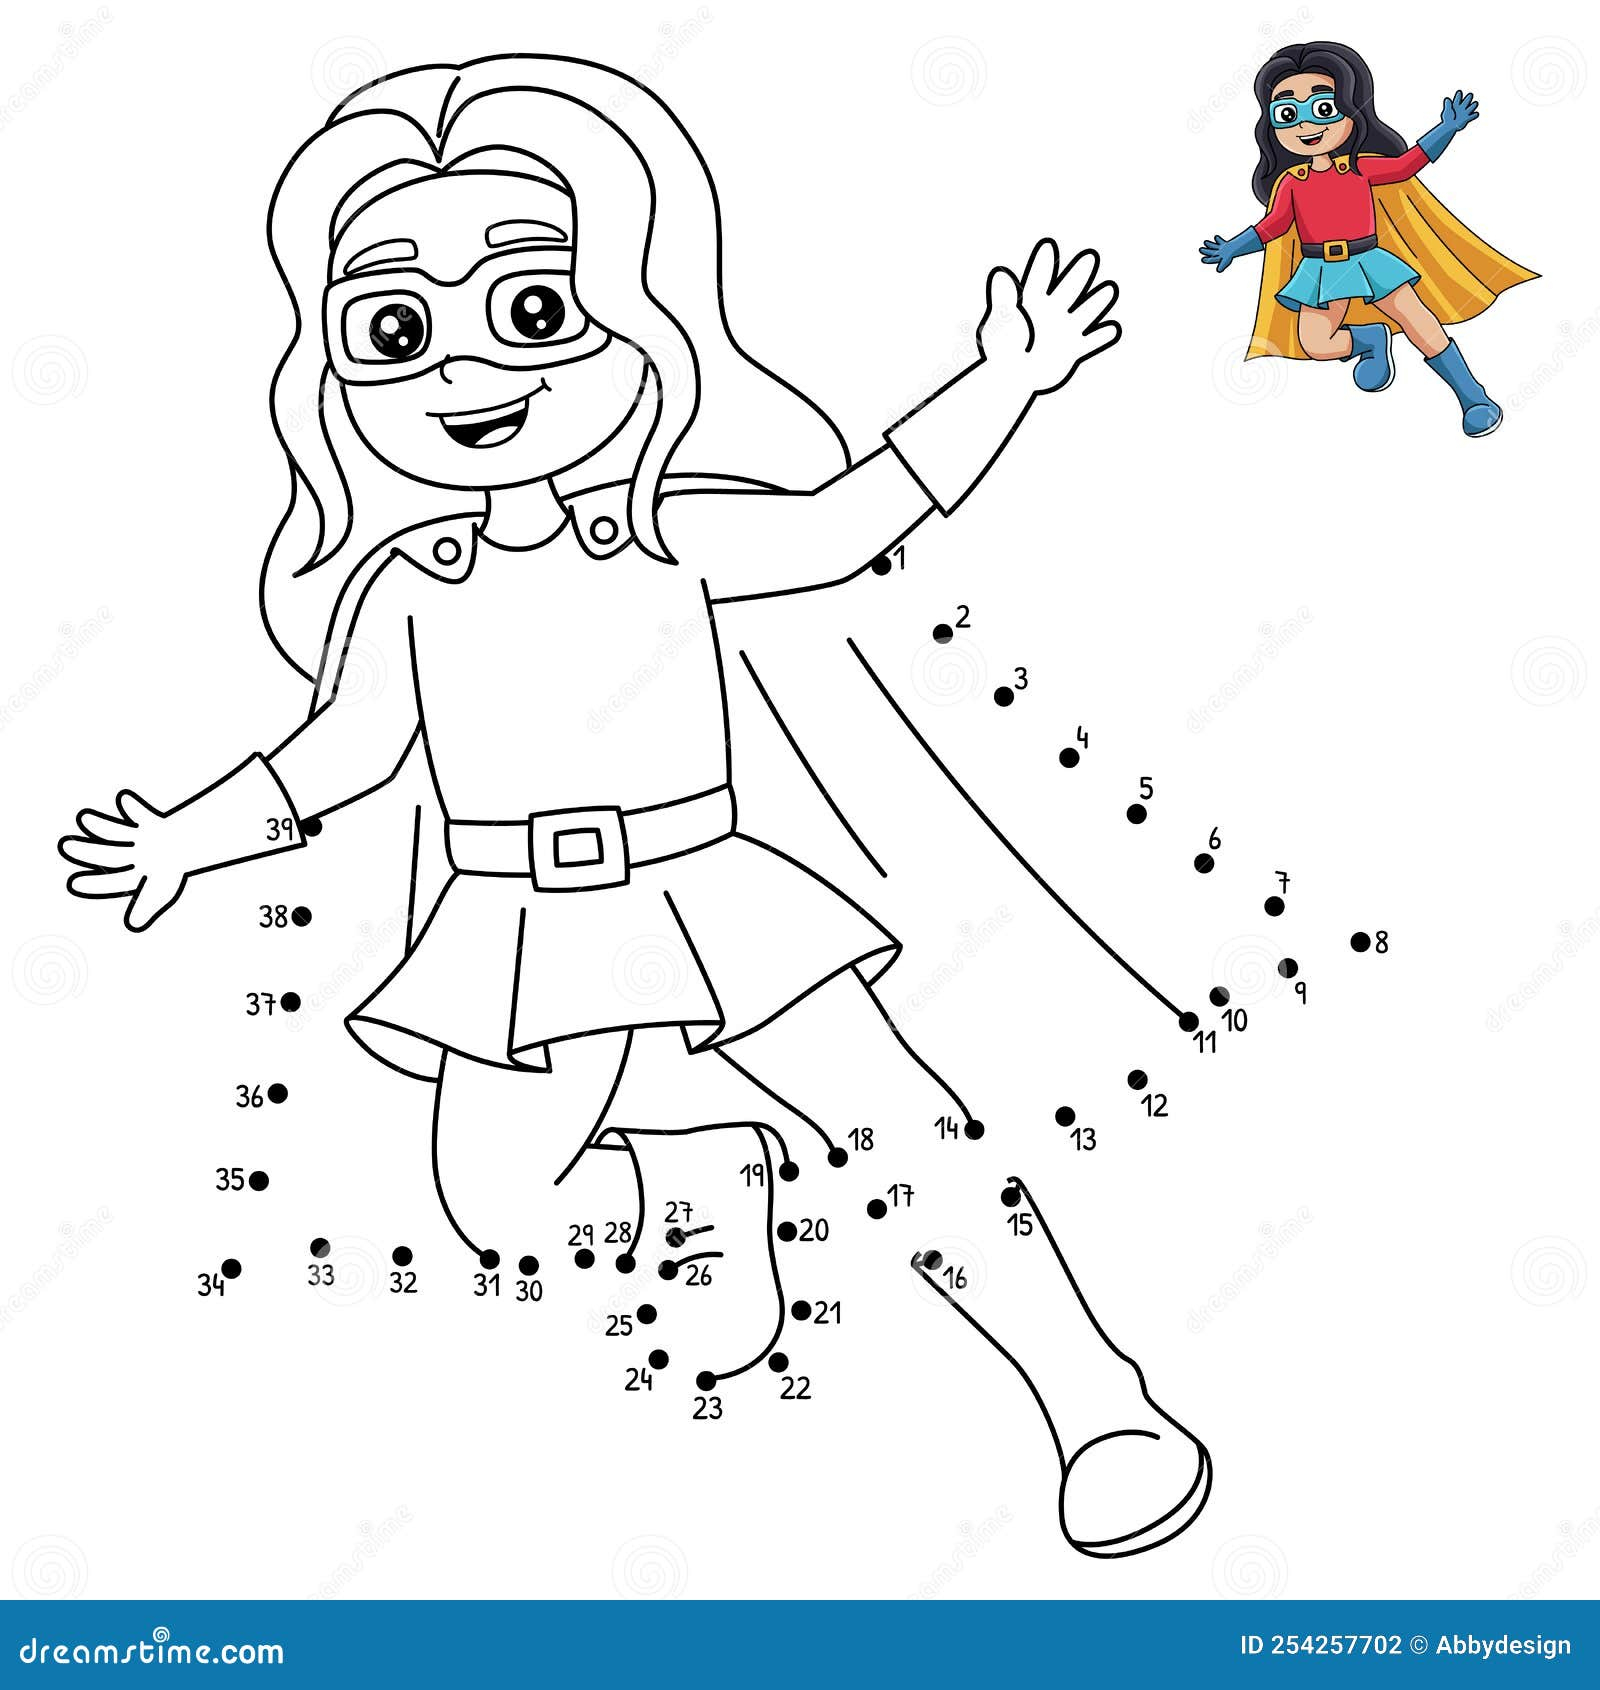 Dot To Dot Superhero Girl Coloring Page For Kids Stock Vector - Free Printable Dot To Dot Superhero